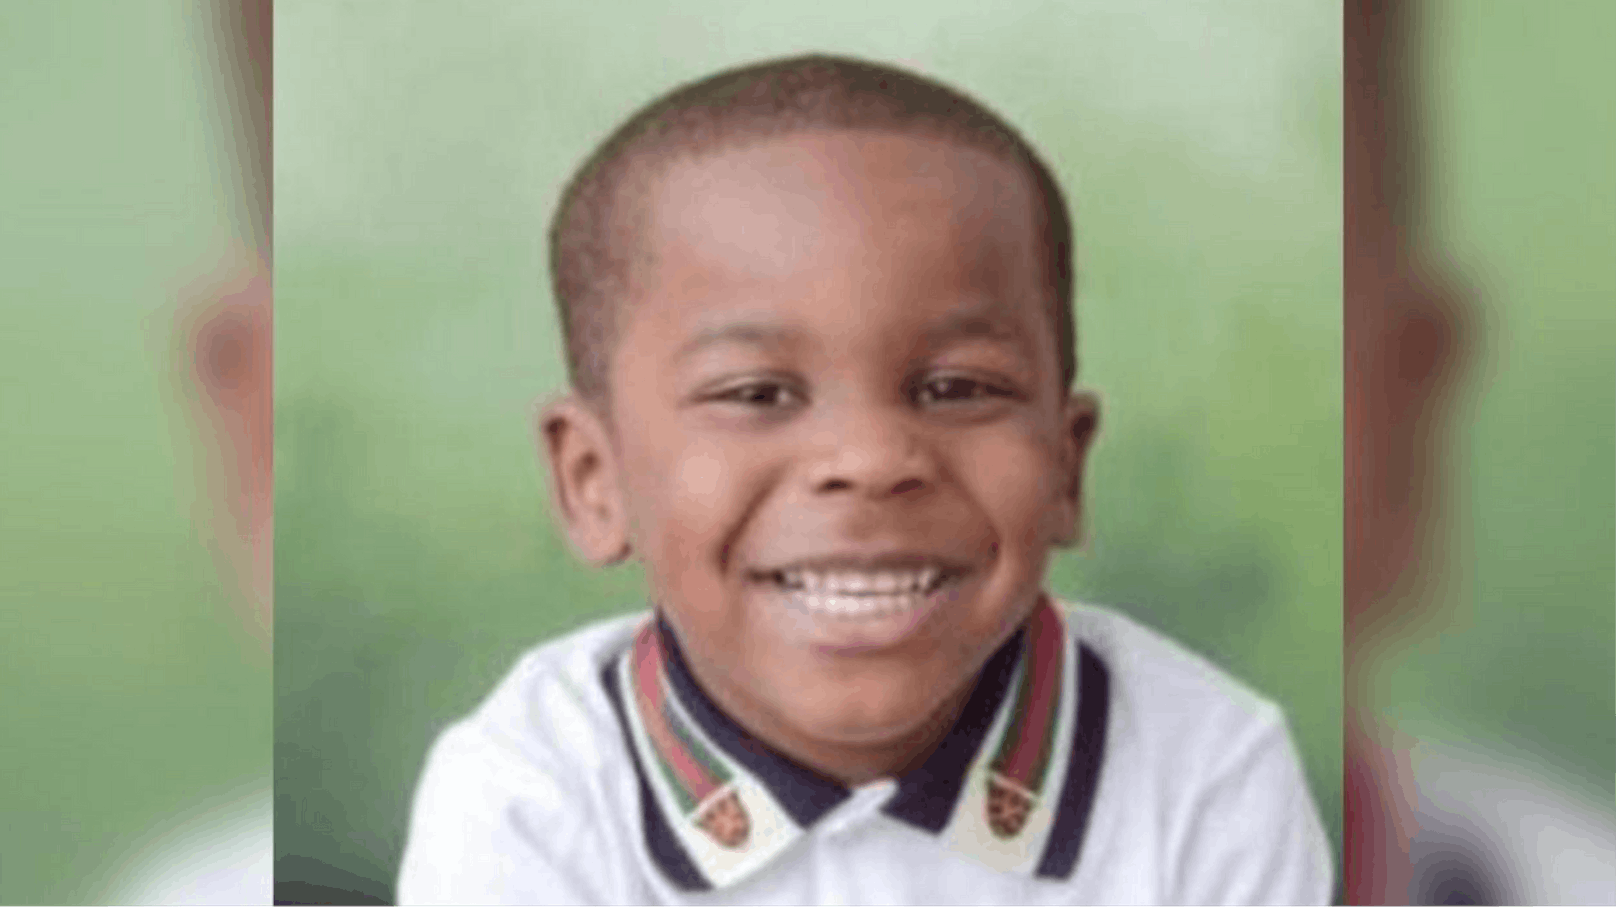 In Florida hat eine irregeleitete Kugel den 3-jährigen Elijah tödlich getroffen. 